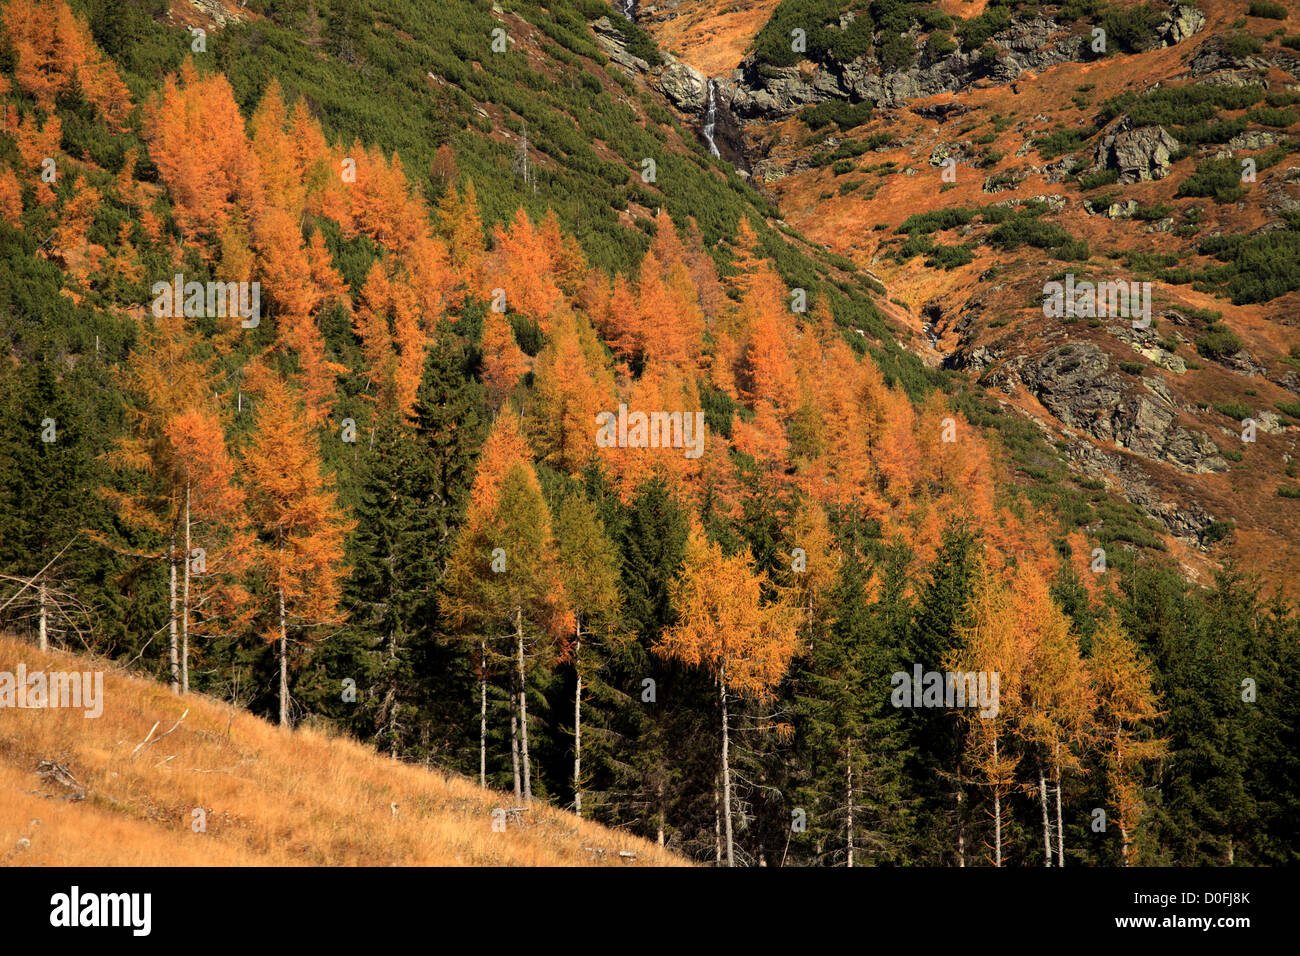 The yellow-coloured larch trees in Ziarska dolina, Zapadne Tatry - Rohace, Slovakia. Stock Photo